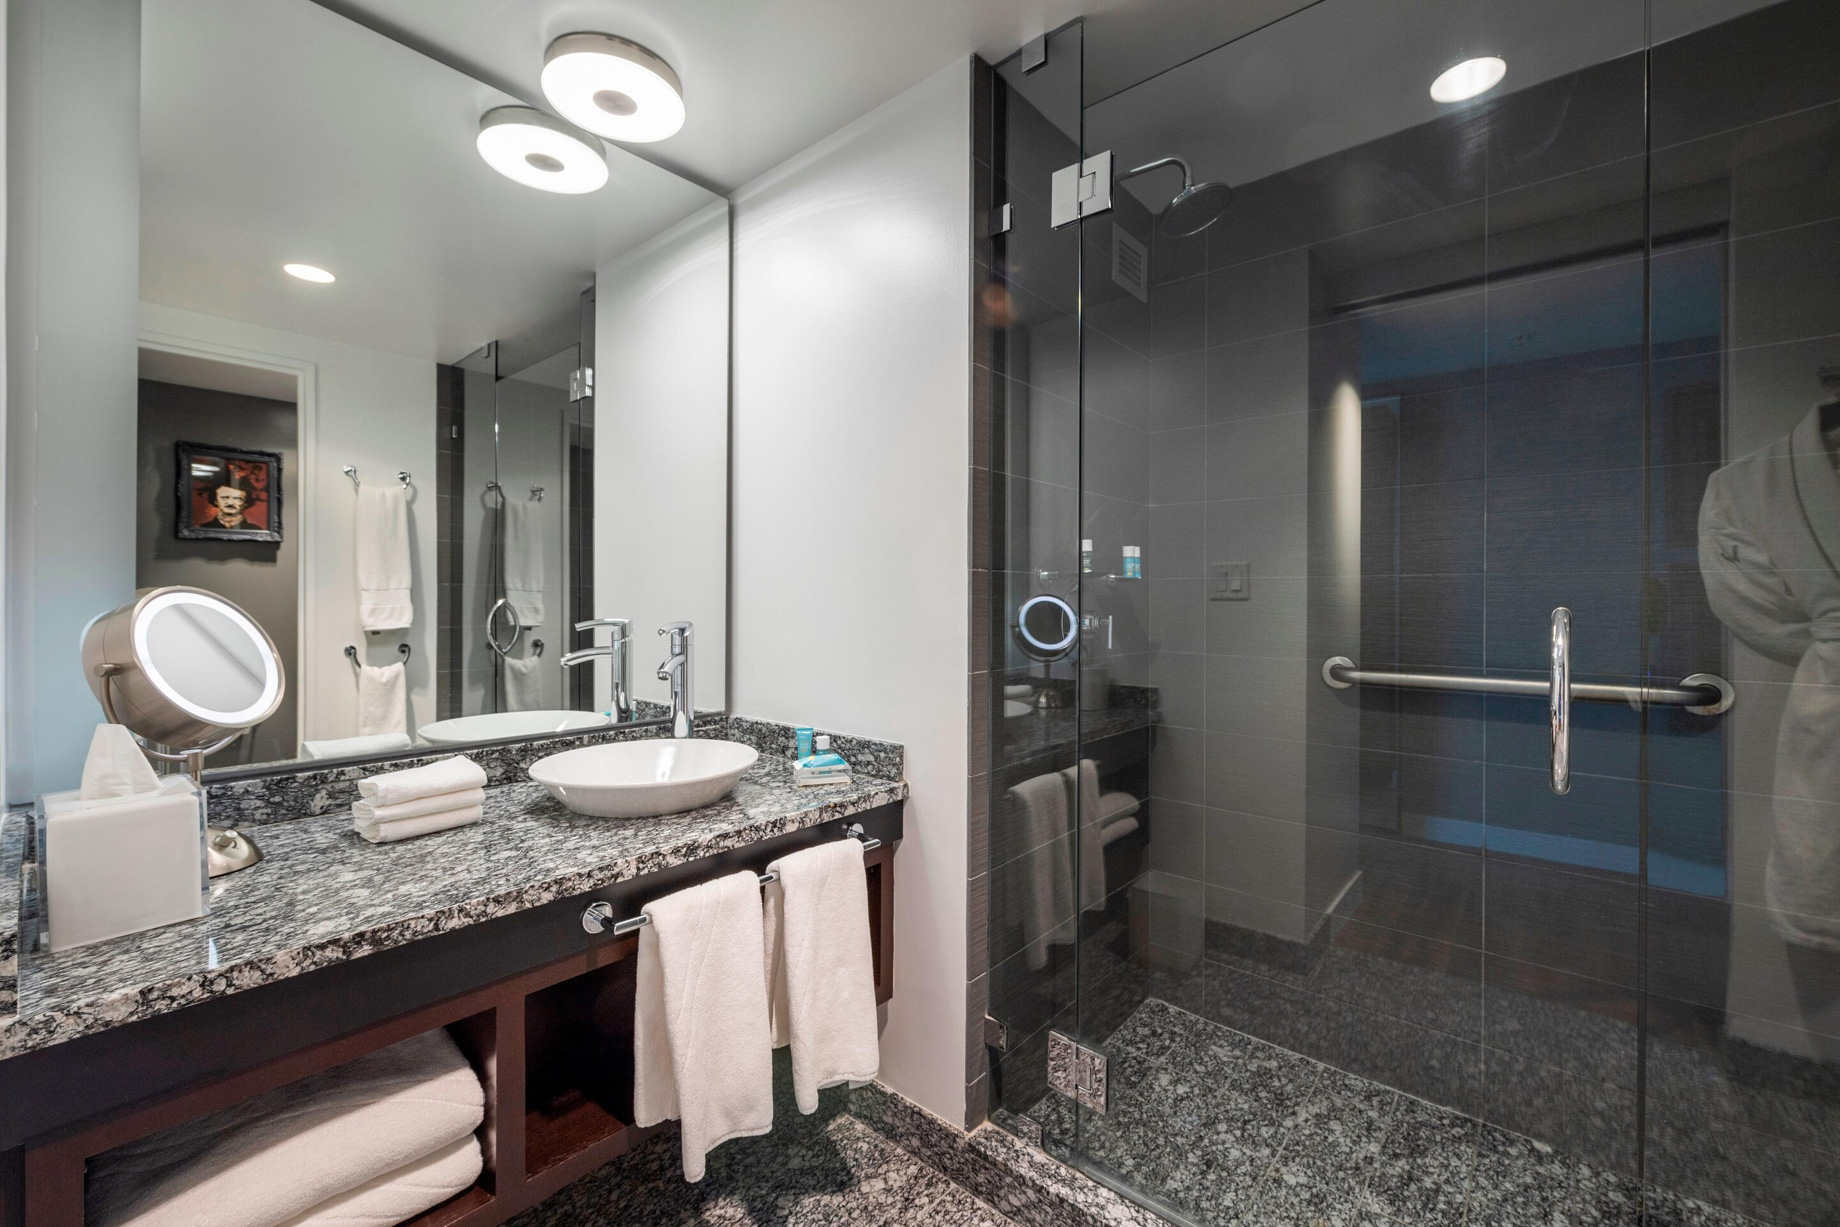 W Boston Hotel – Boston, MA, USA – Spectacular Guest Room Bathroom Vanity